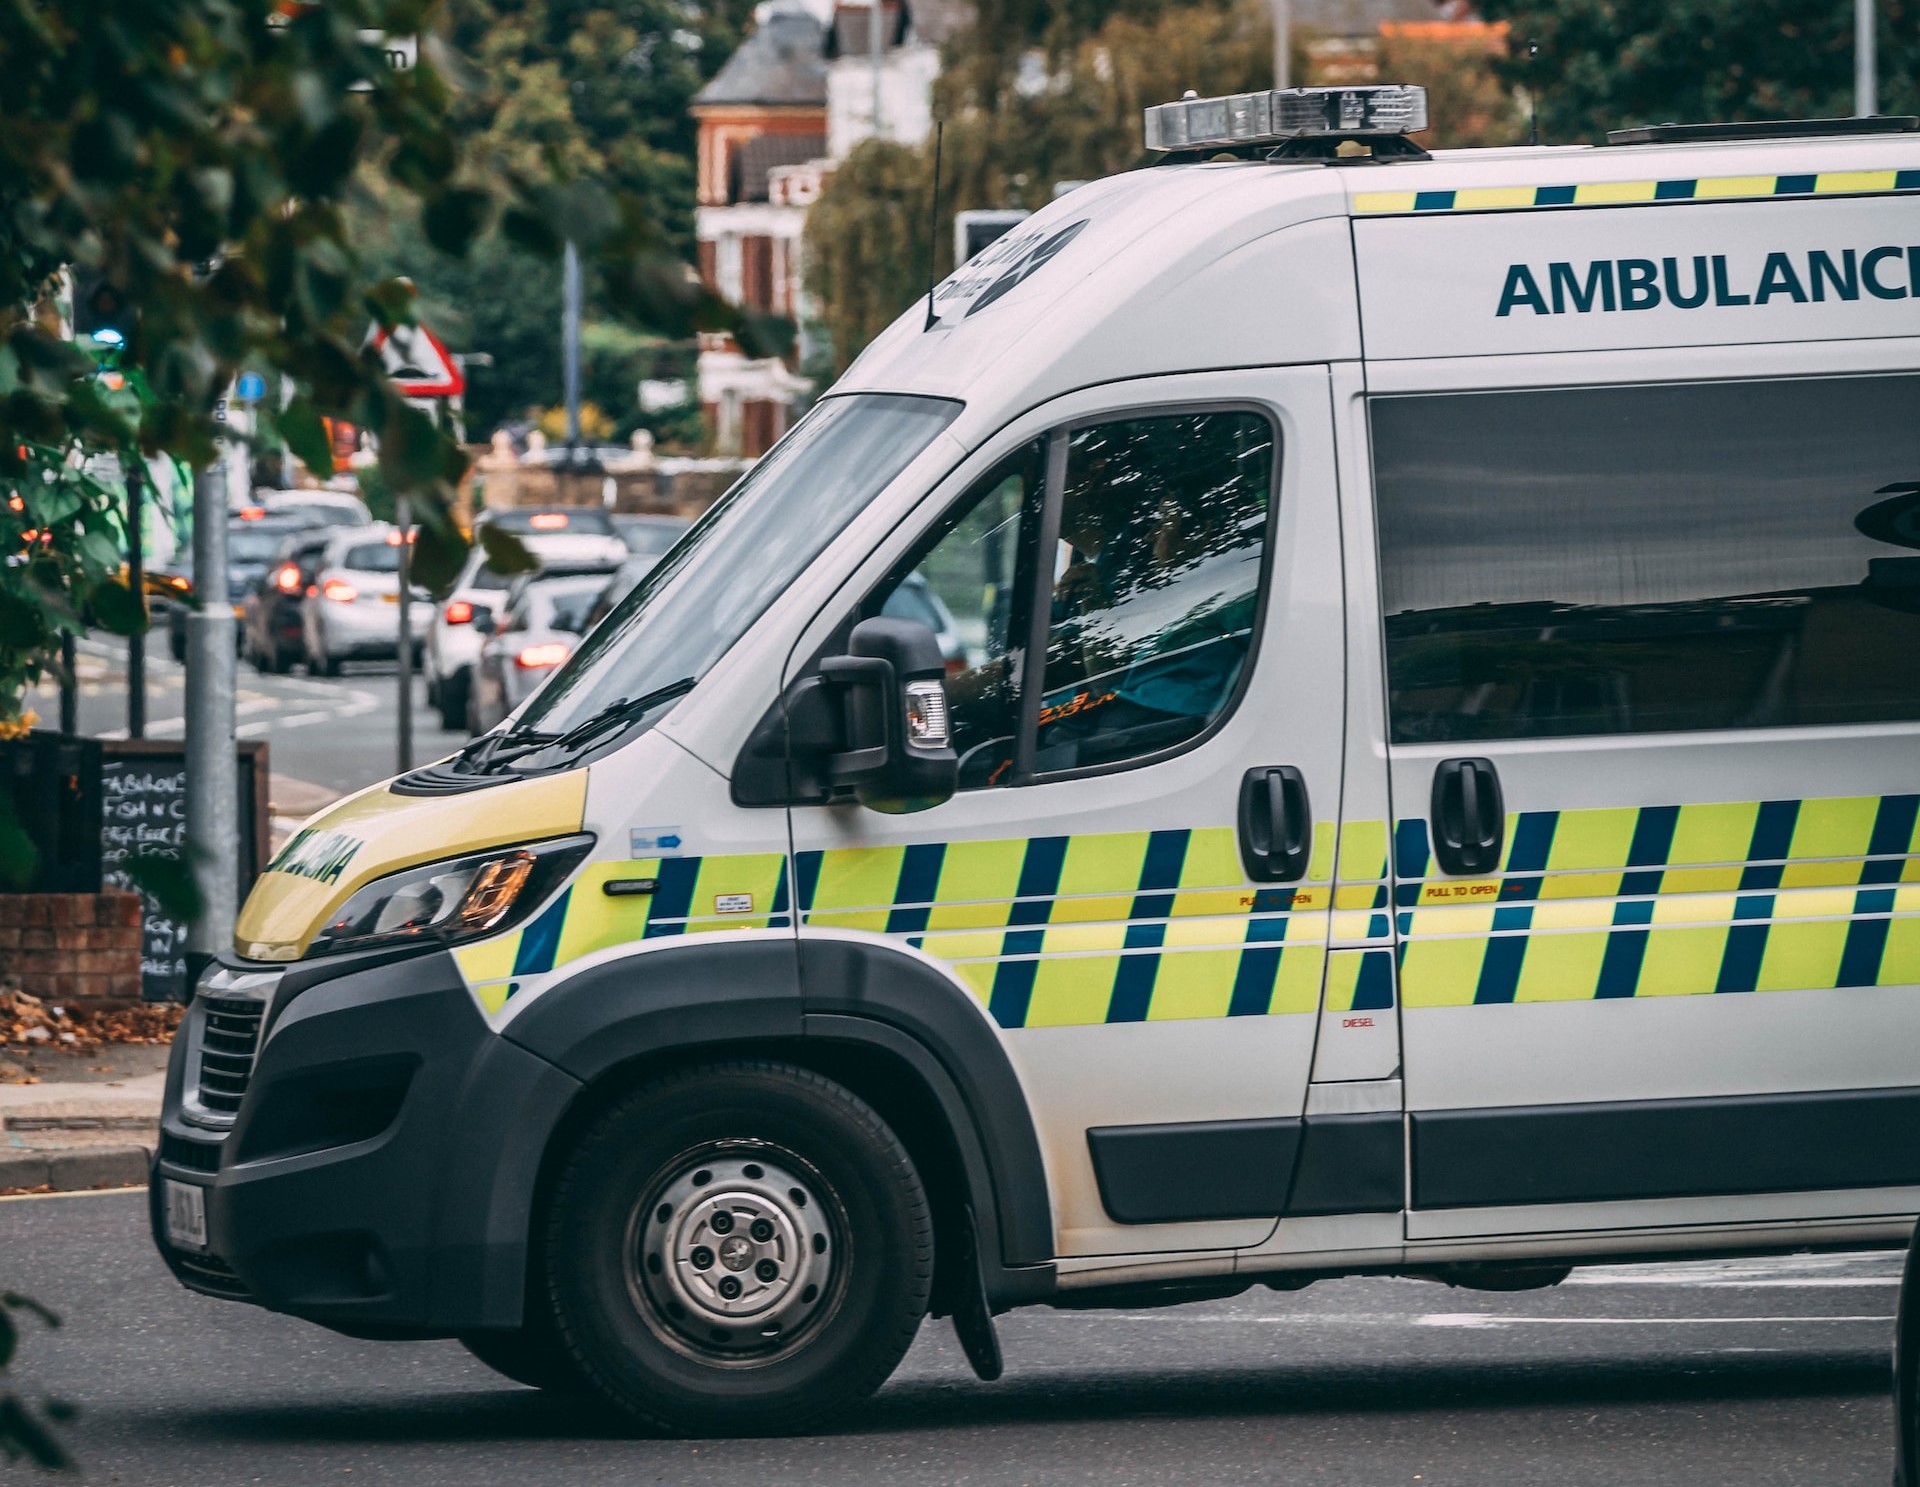 Ambulance parked on a street